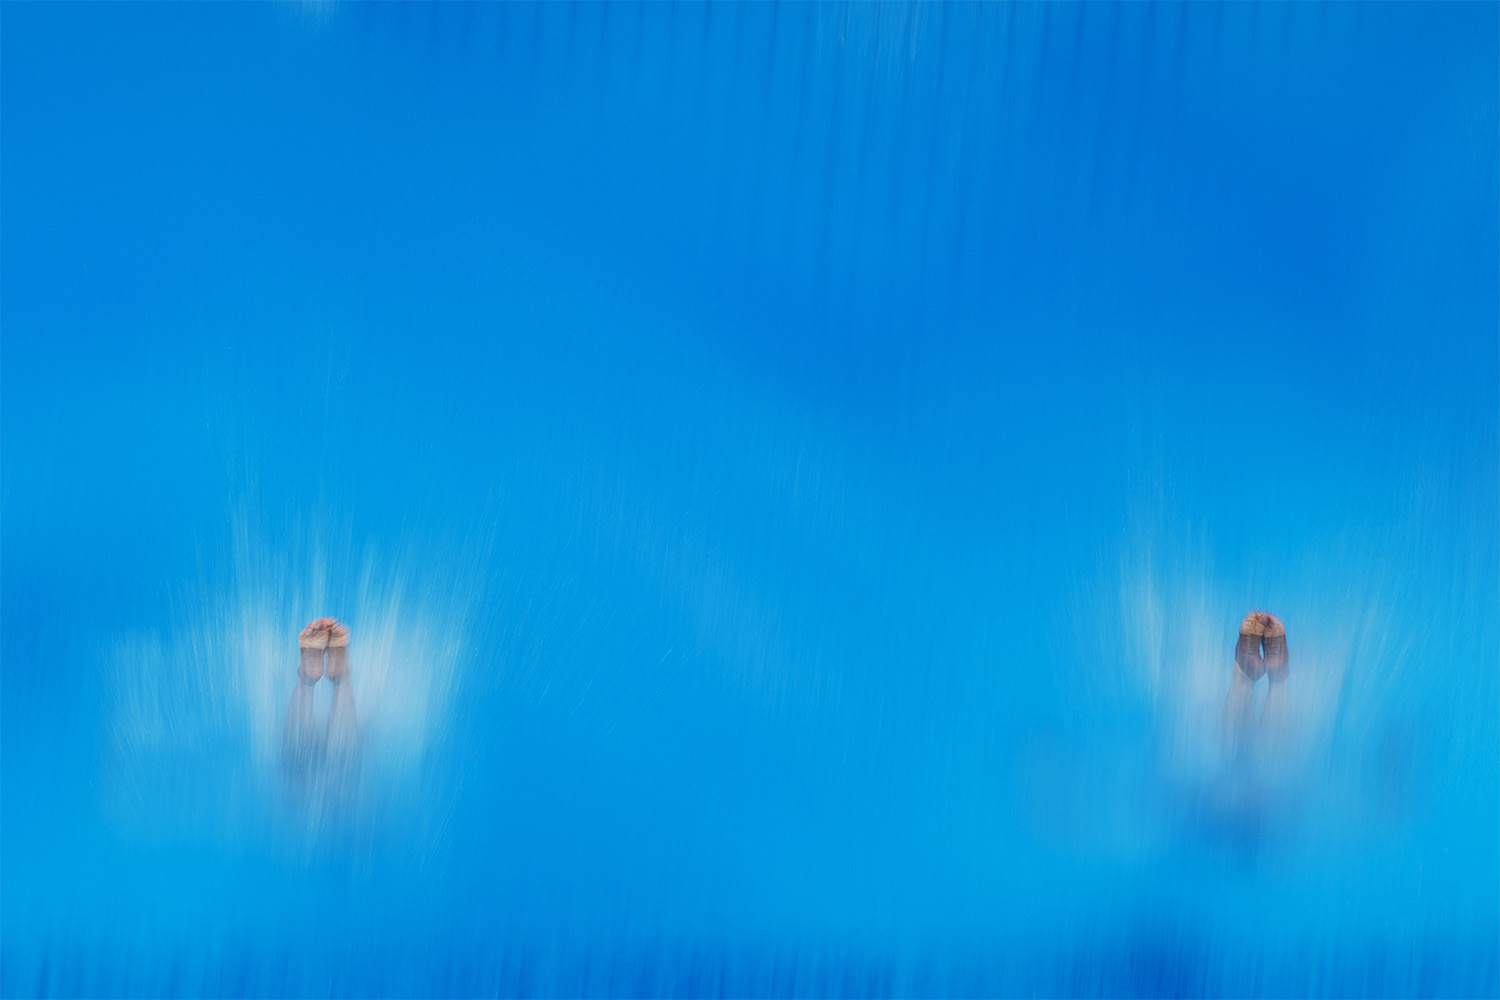 וונג זונגיואן ואקסי סיי הסינים מתחרים בקפיצה למים מגובה 3 מטרים באולימפיאדת הקיץ בטוקיו. 26 ביולי 2021 (צילום: AP Photo/Morry Gash)